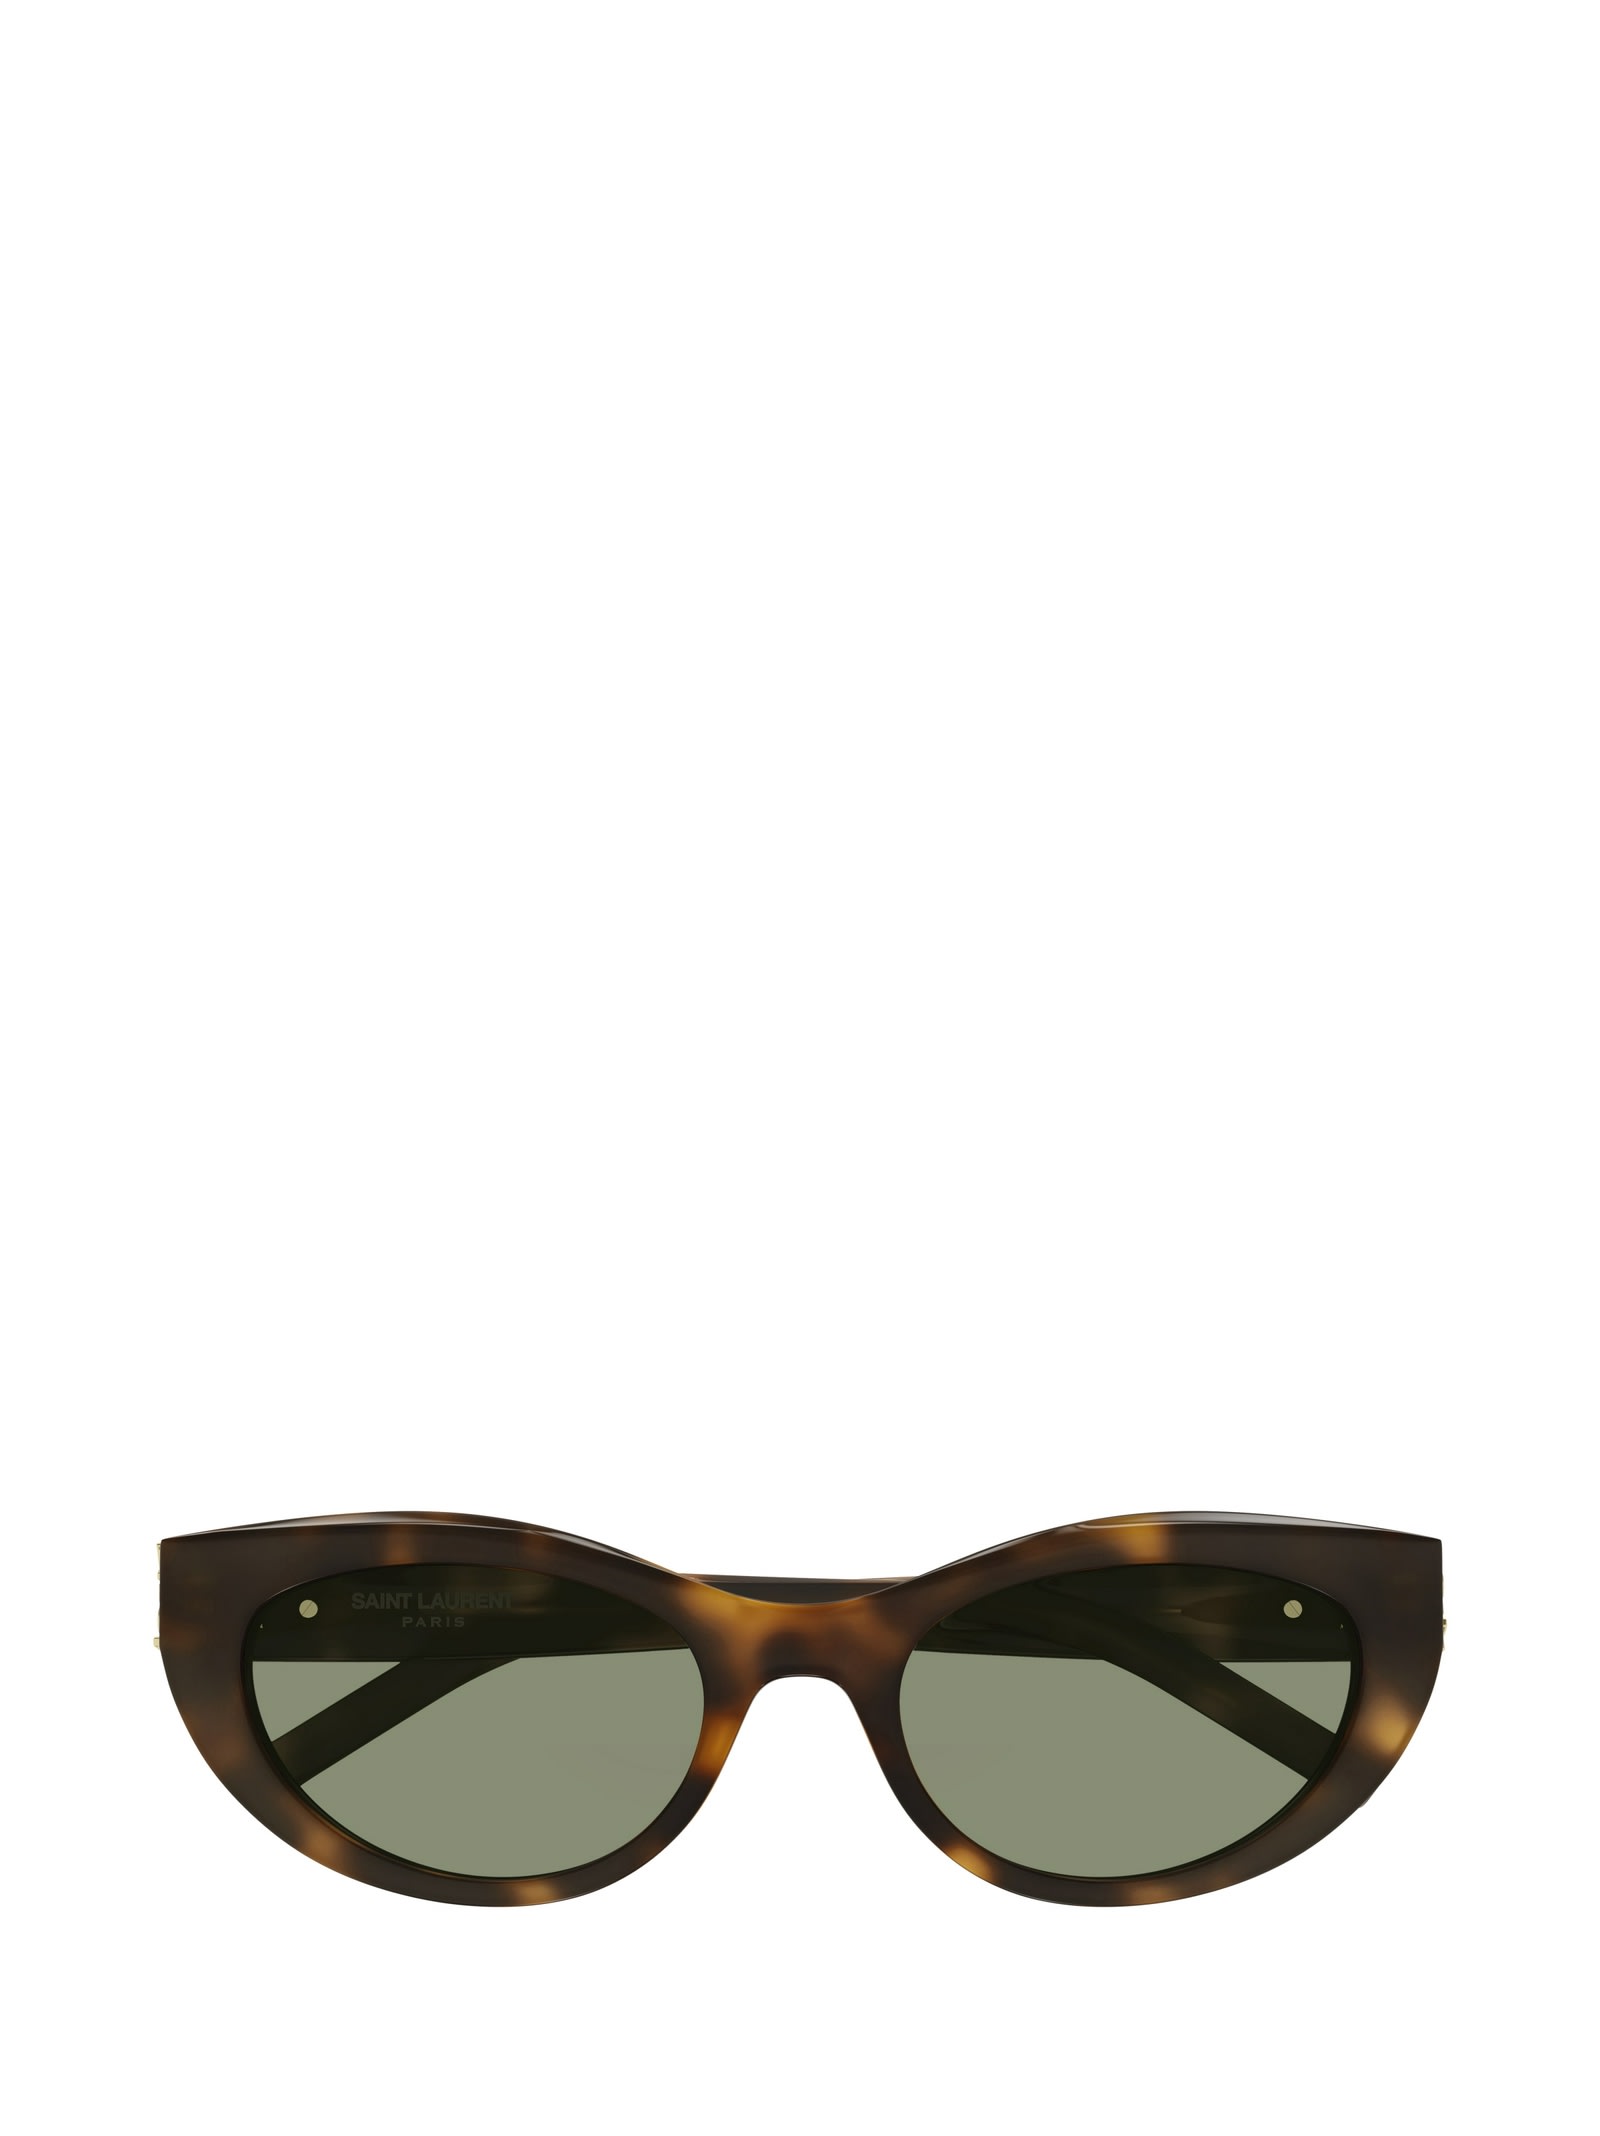 Shop Saint Laurent Sl M115 Havana Sunglasses